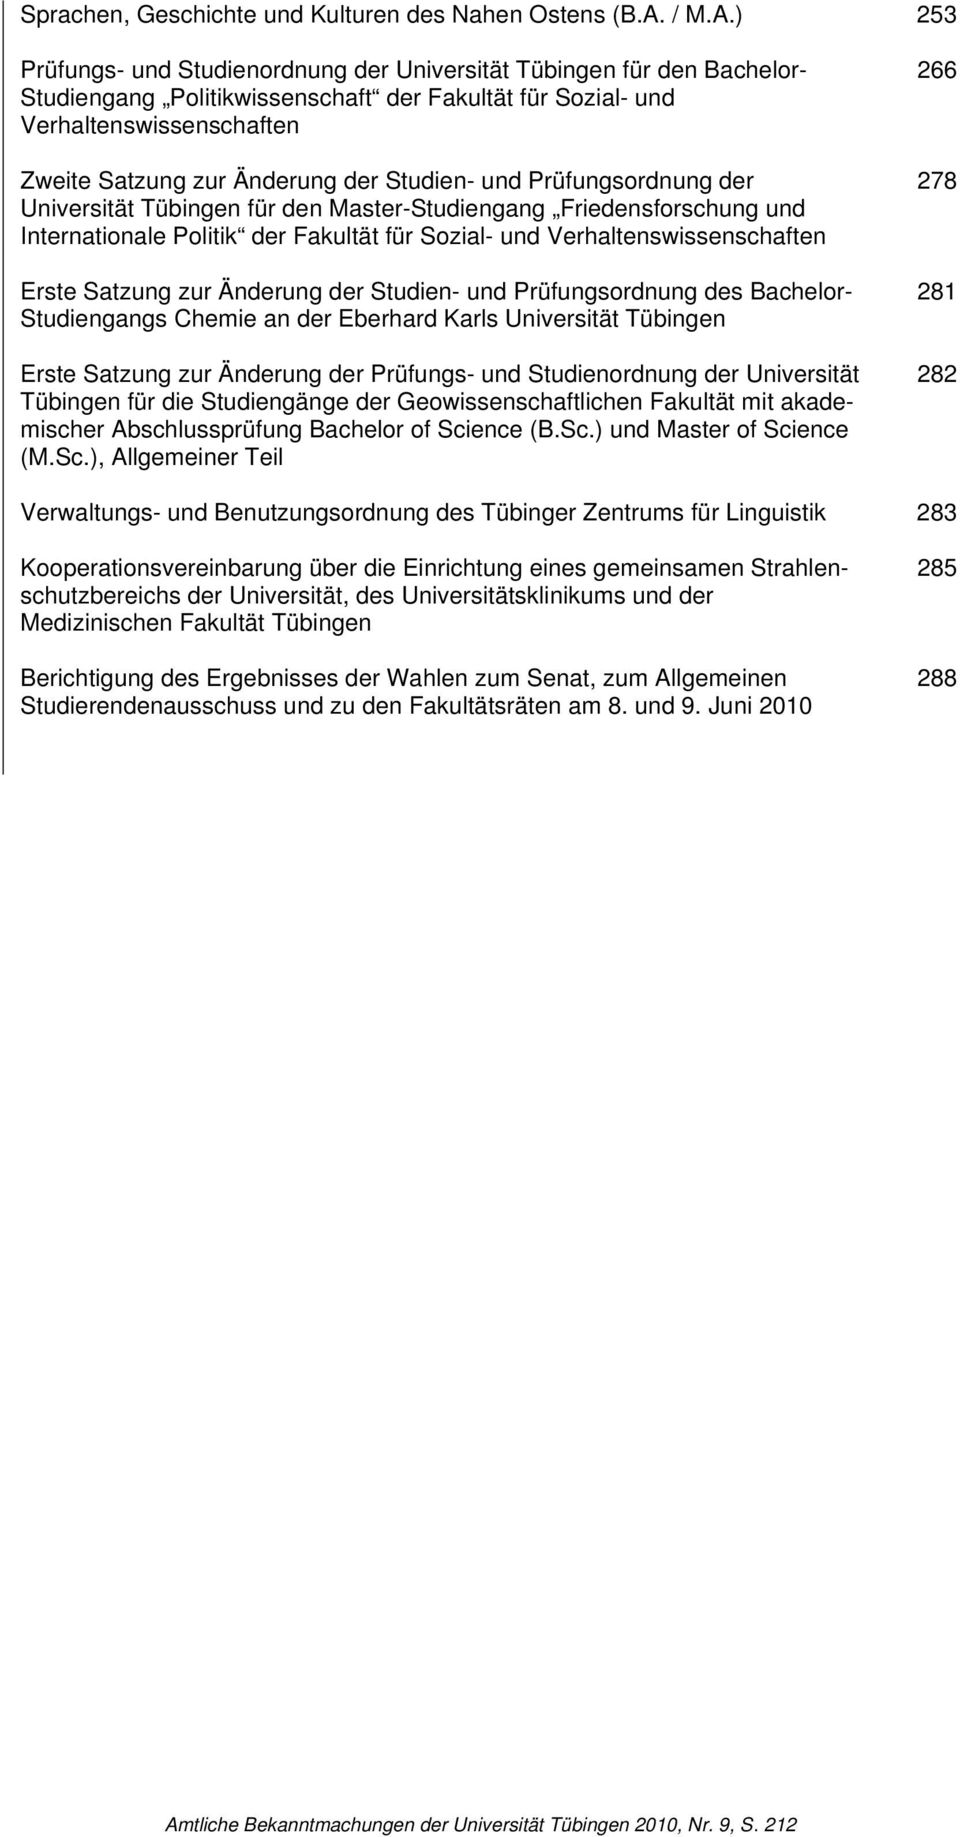 ) 253 Prüfungs- und Studienordnung der Universität Tübingen für den Bachelor- Studiengang Politikwissenschaft der Fakultät für Sozial- und Verhaltenswissenschaften Zweite Satzung zur Änderung der